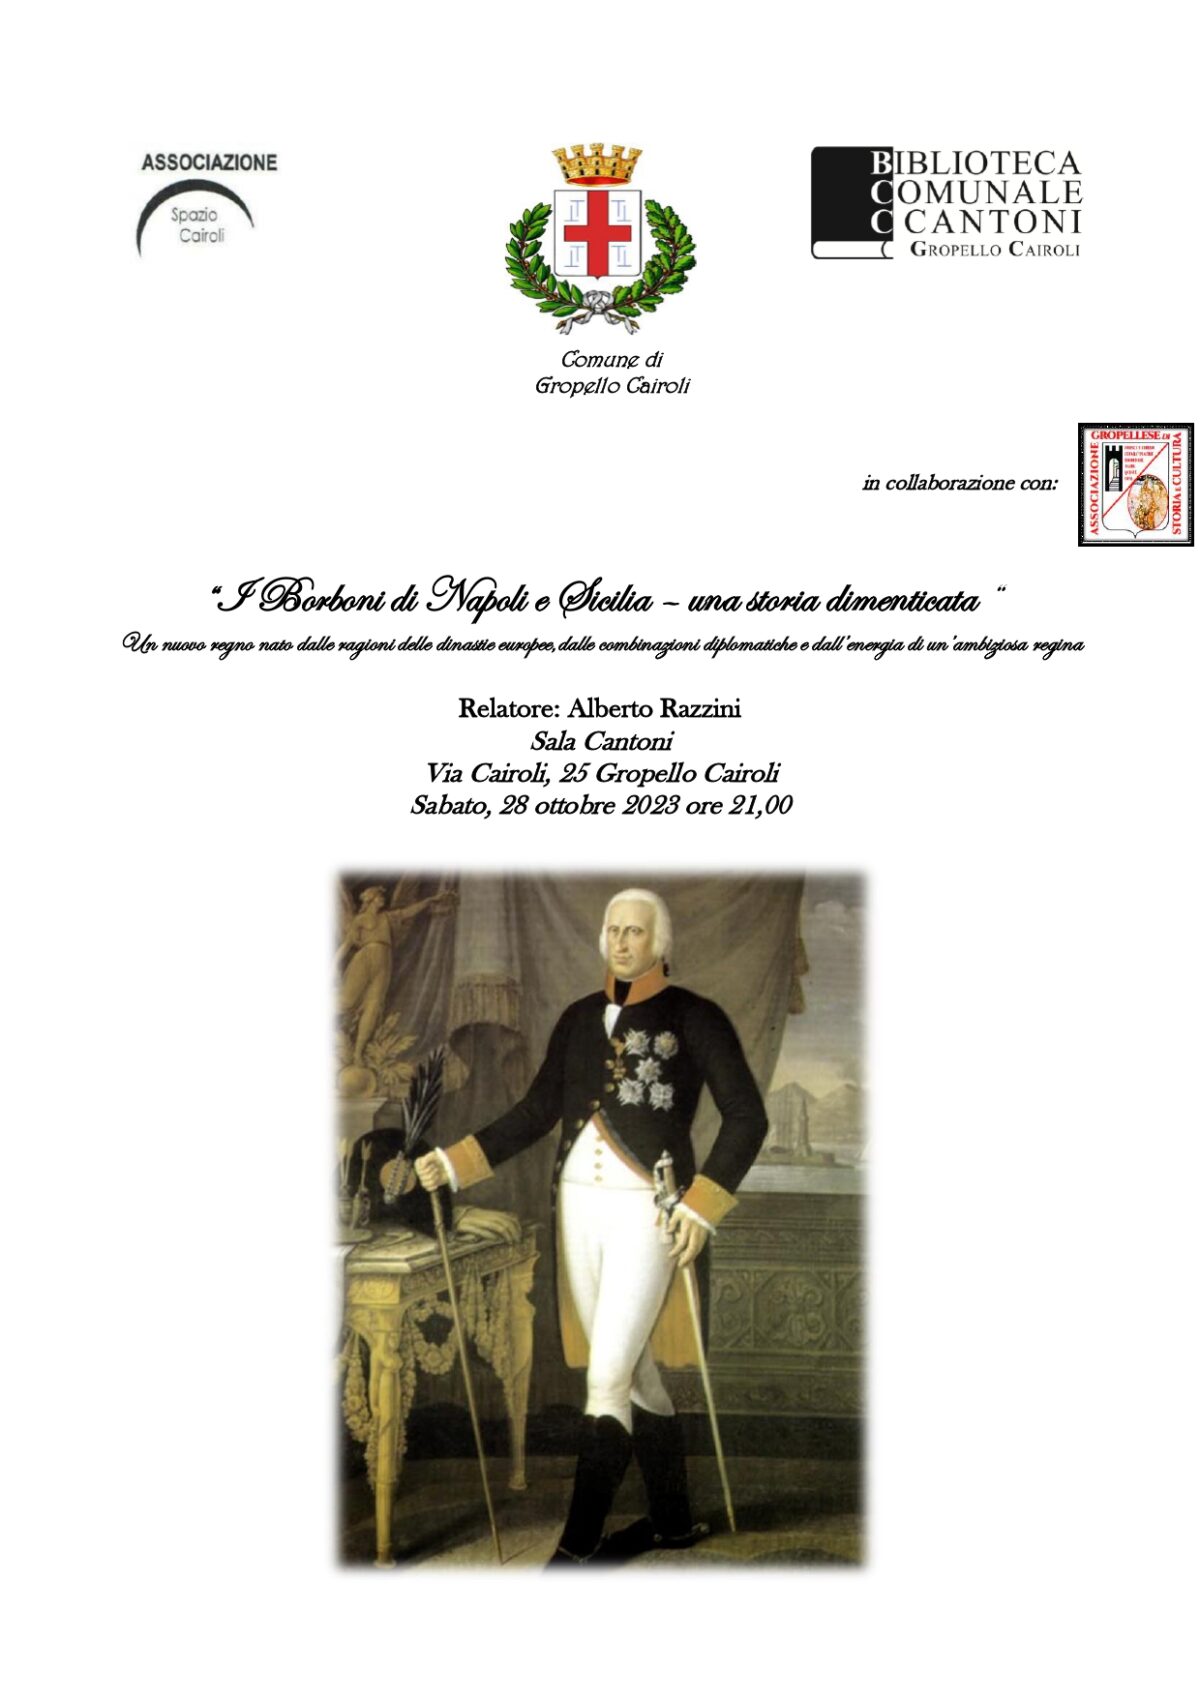 Biblioteca: Sabato 28 ottobre ore 21,00 seminario “I Borboni di Napoli e Sicilia una storia dimenticata” a cura di Alberto Razzini